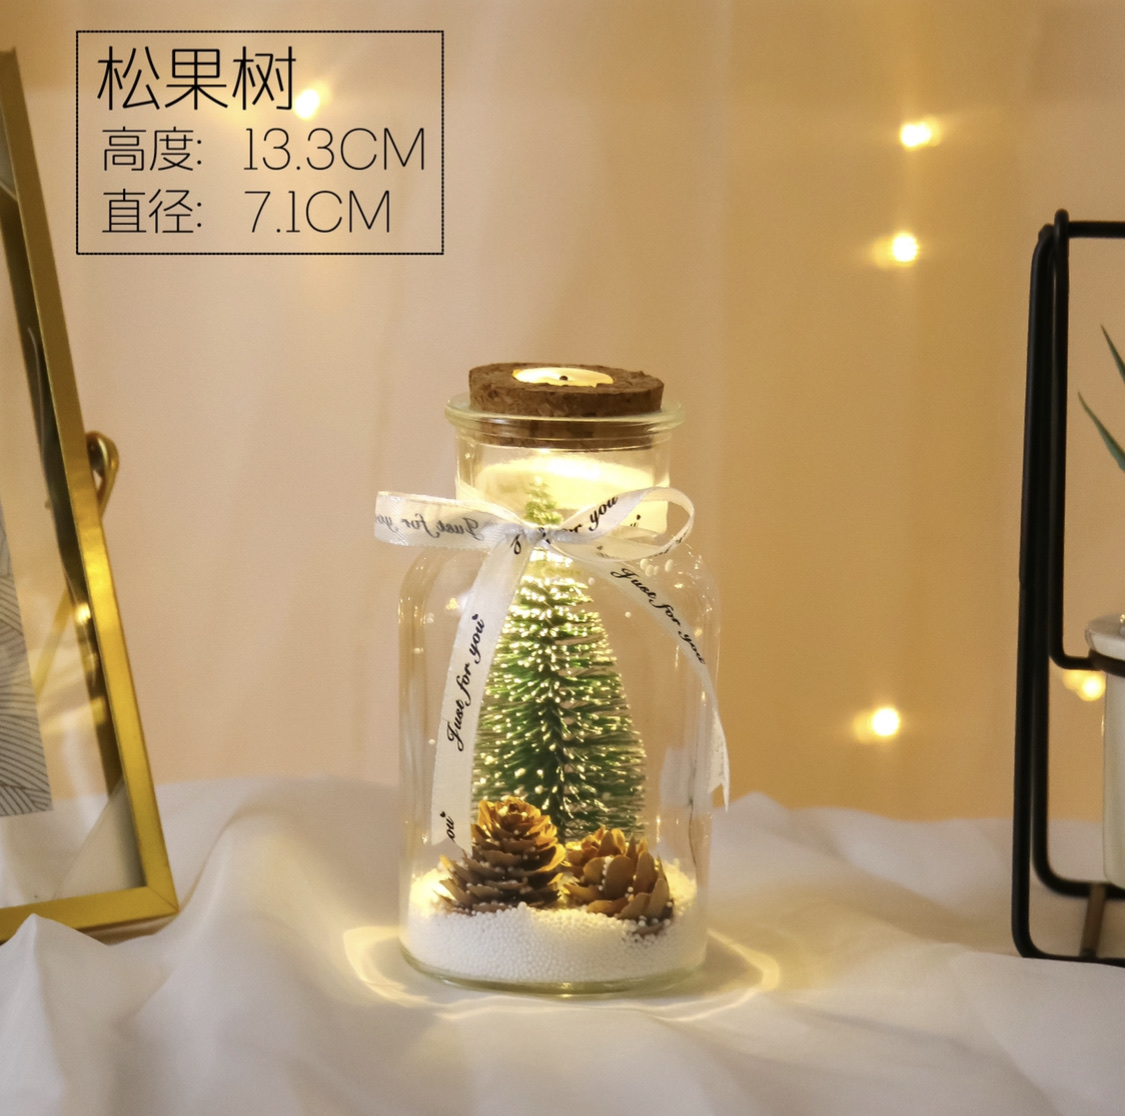 圣诞松果仿真迷你圣诞树雪花微景观玻璃摆件LED礼品许愿瓶 细节图